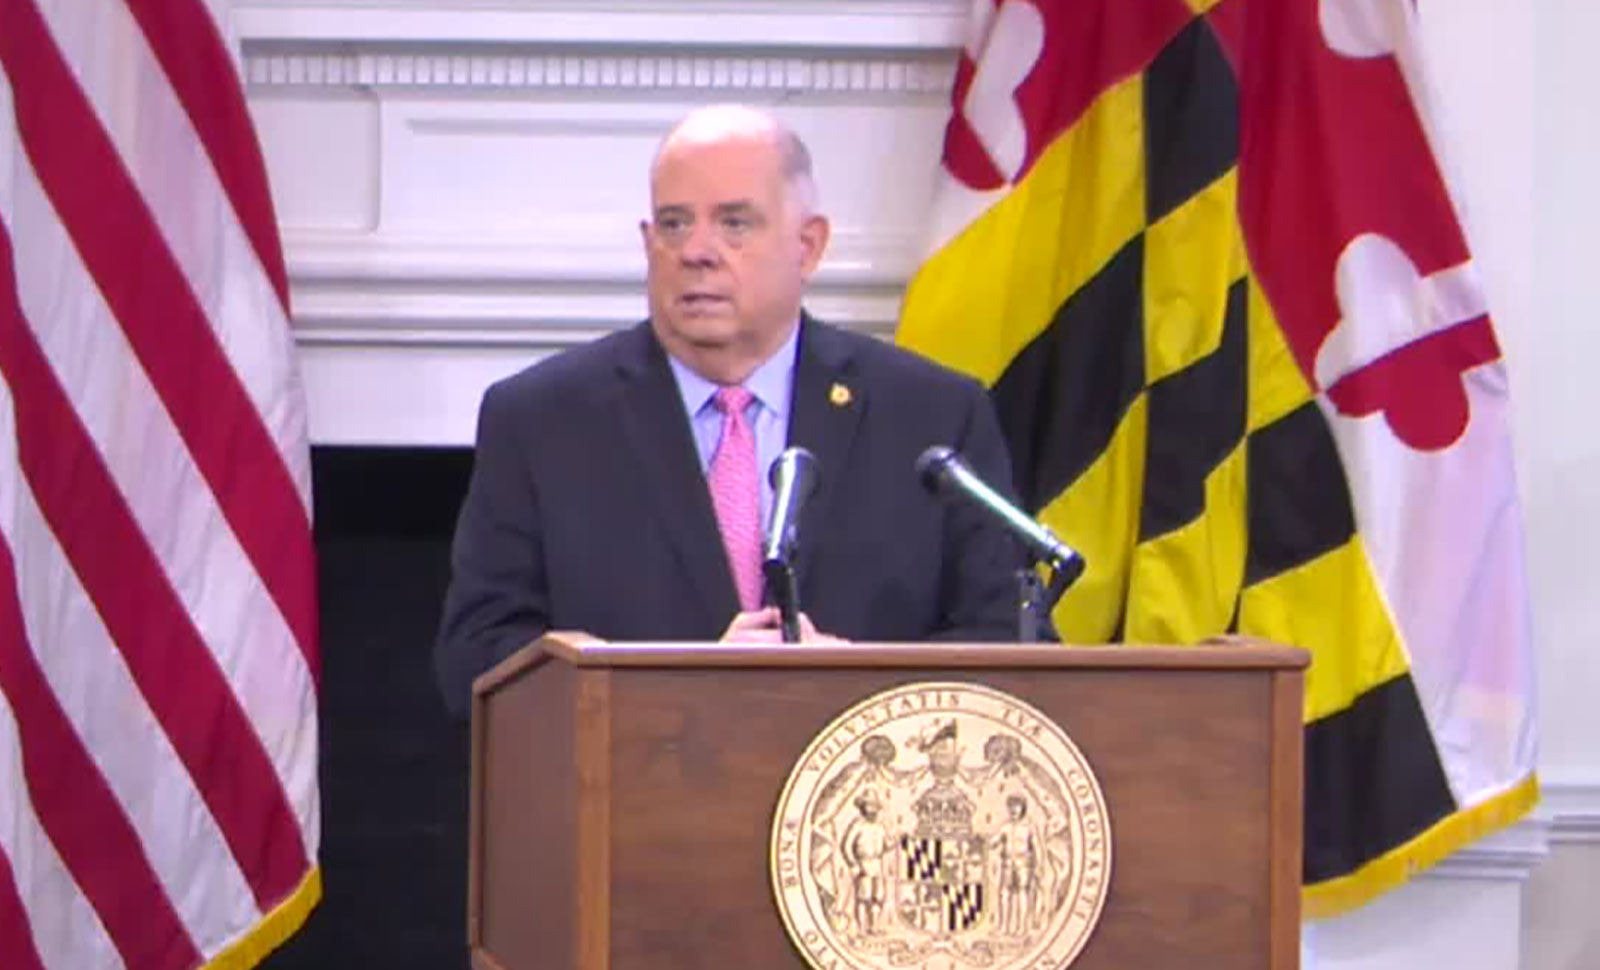 Maryland Gov. Larry Hogan speaks during a press conference on Thursday, October 1.